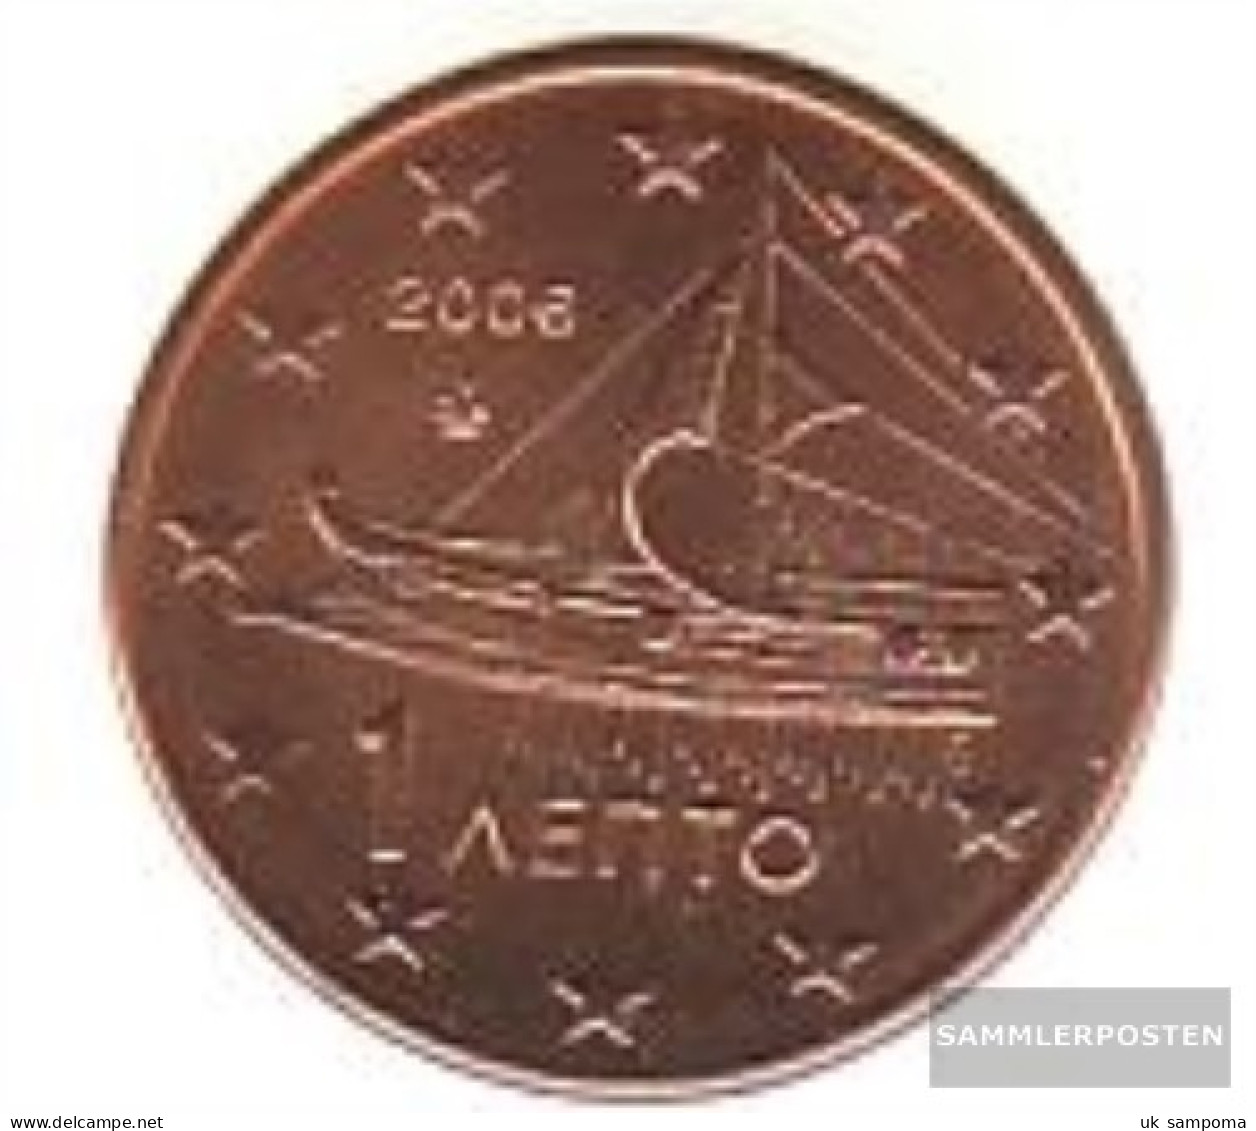 Greece Grams 1 2006 Stgl./unzirkuliert Stgl./unzirkuliert 2006 Kursmünze 1 Cent - Griechenland